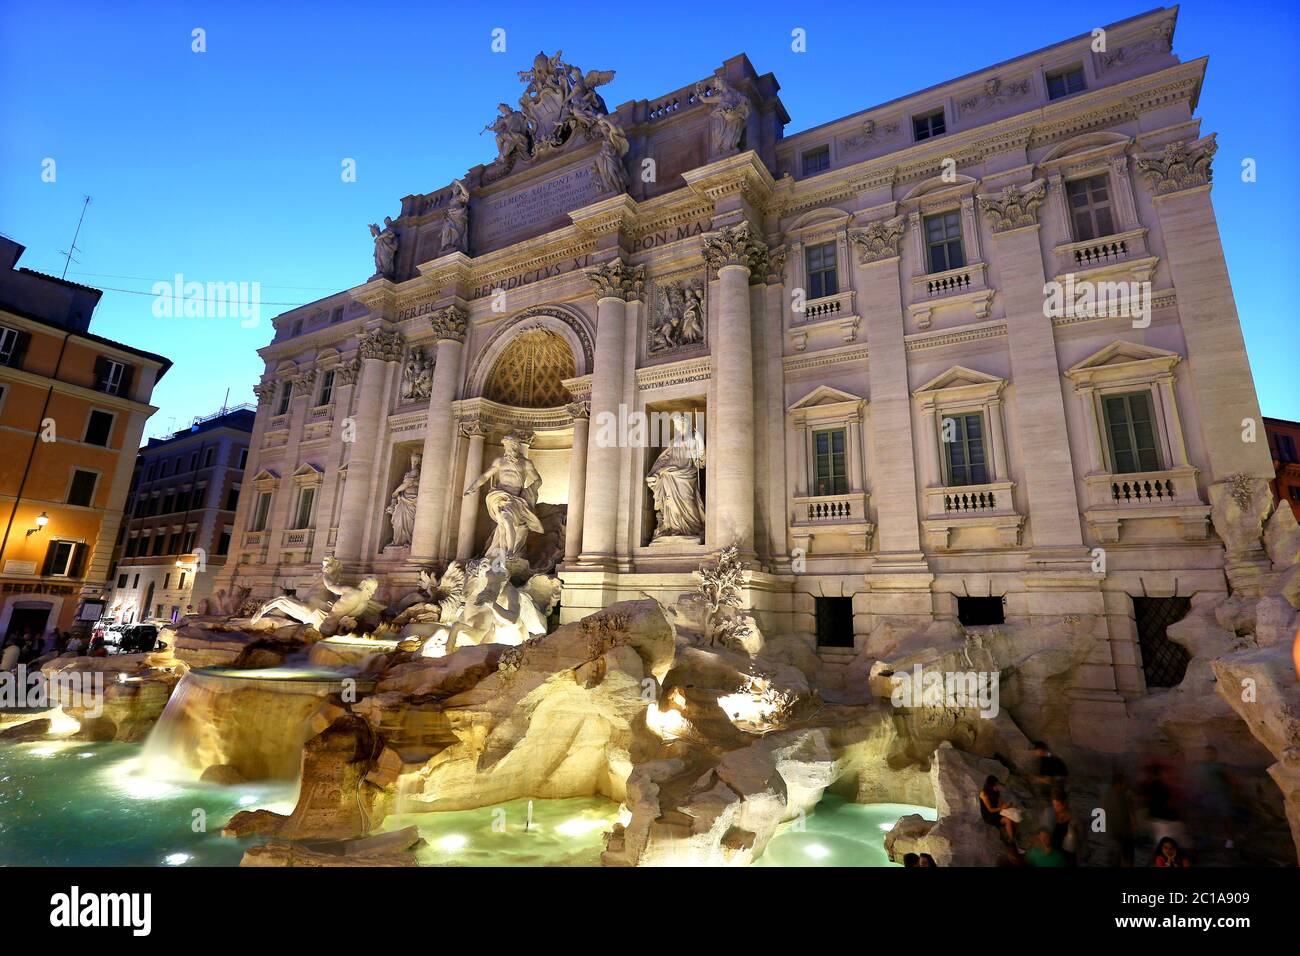 Images autour de Rome, Italie, y compris la célèbre fontaine de Trevi (Fontanna di Trevi), conçue par le srchitect italien Nicola Salvi Banque D'Images